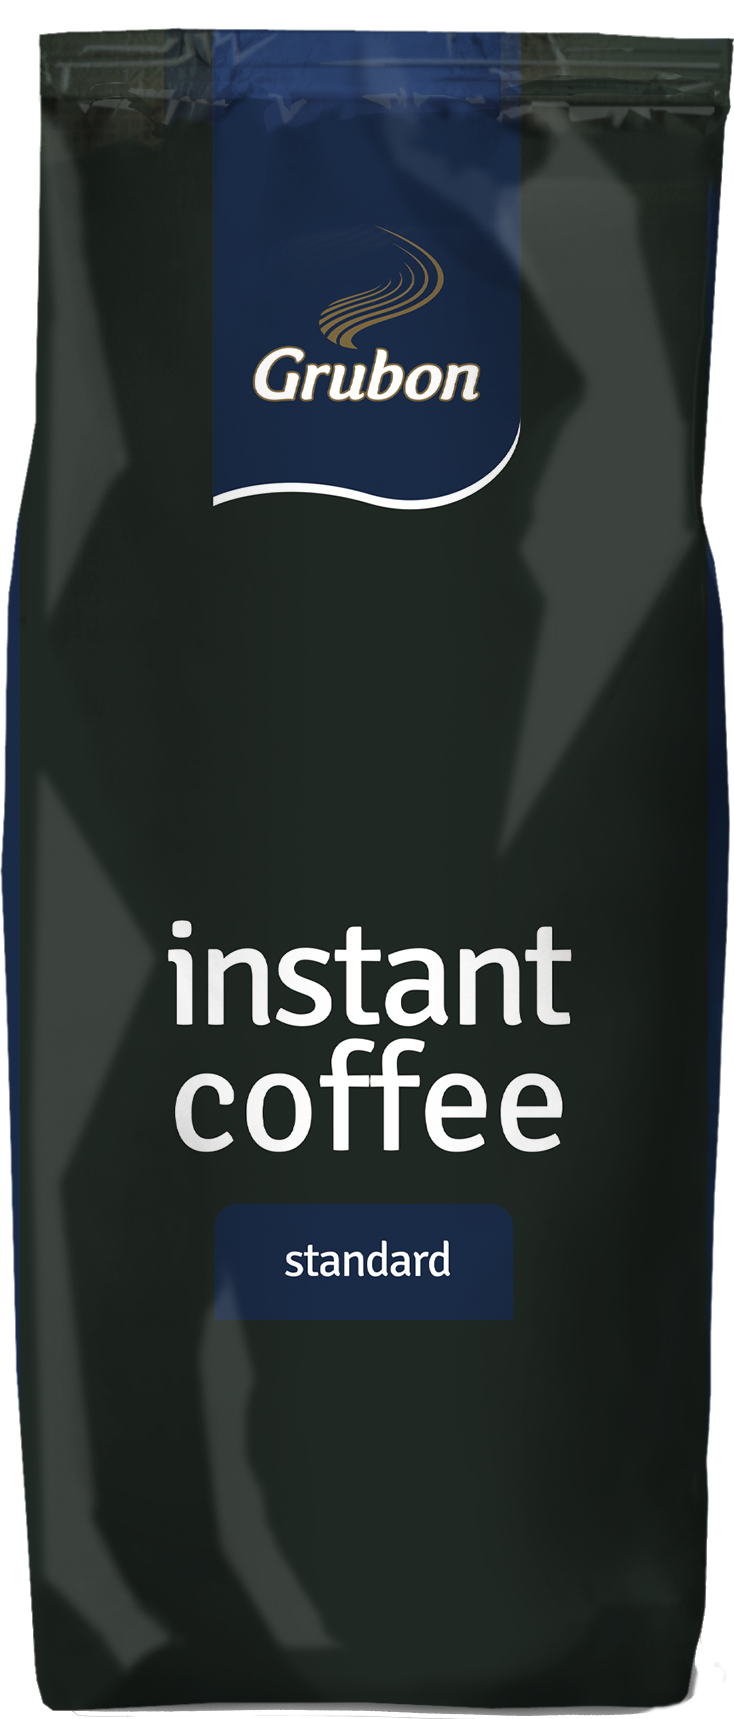 Grubon Instantkaffee Standard gefriergetrocknet